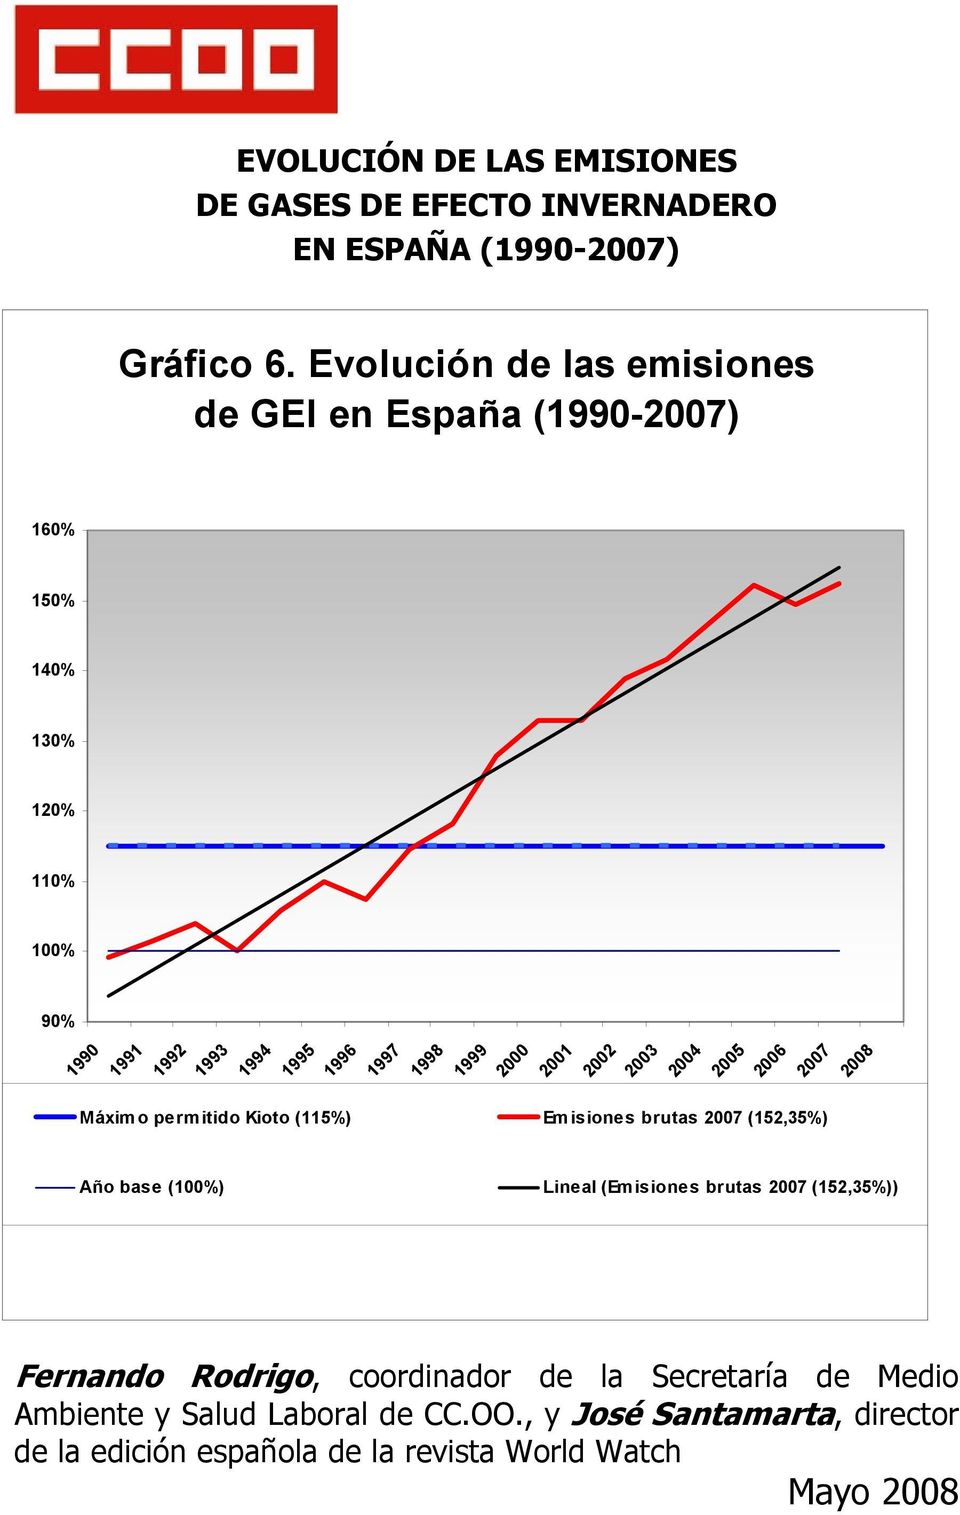 2000 2001 2002 2003 2004 2005 2006 2007 2008 Máximo permitido Kioto (115%) Emisiones brutas 2007 (152,35%) Año base (100%) Lineal (Emisiones